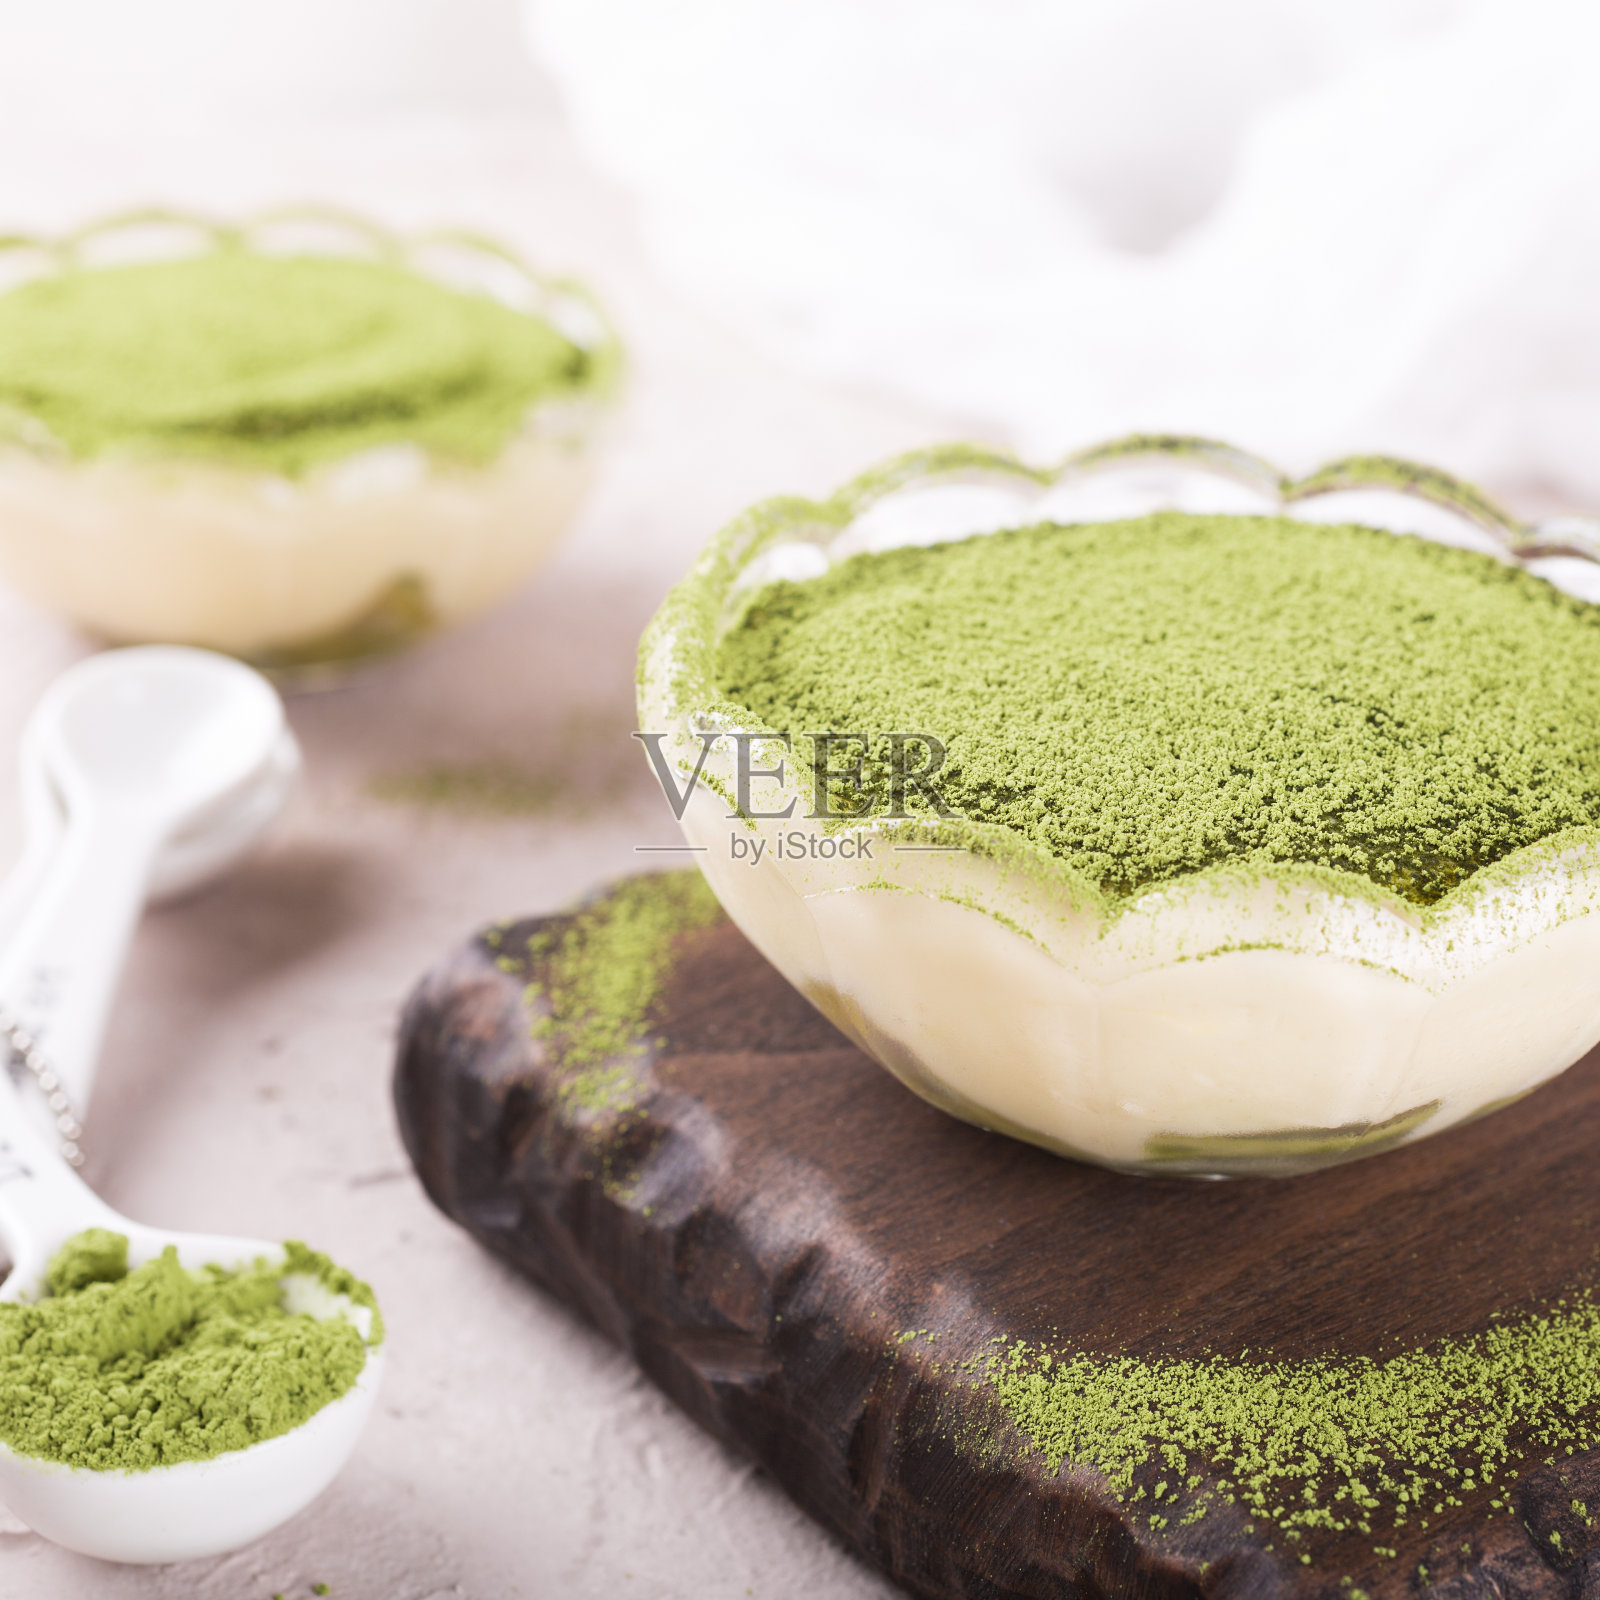 提拉米苏蛋糕配绿茶抹茶照片摄影图片